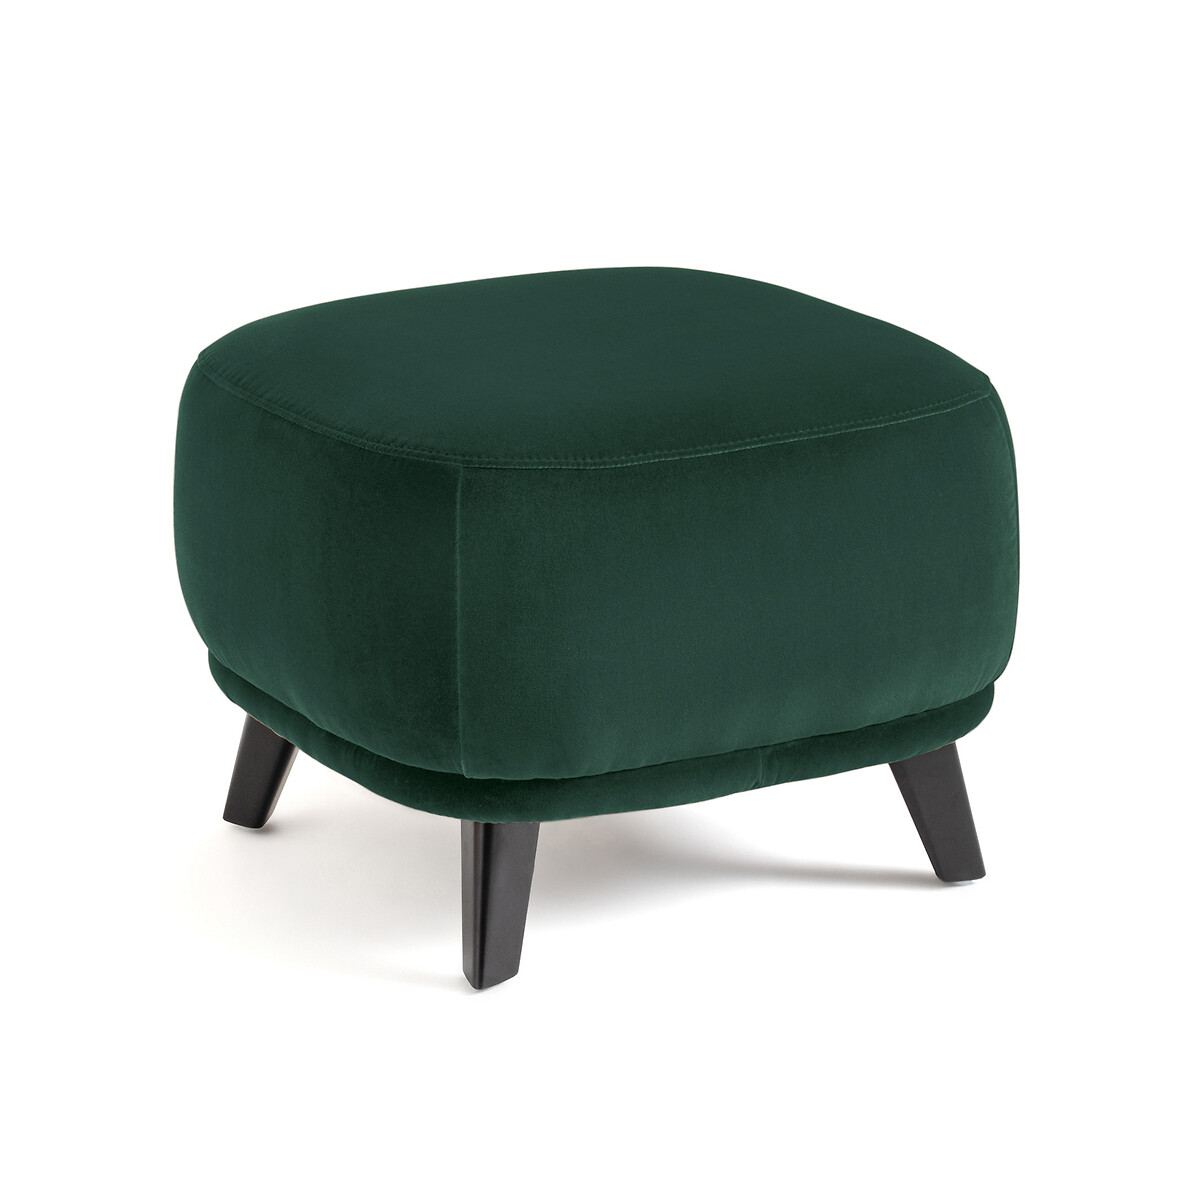 Подставка под ноги из велюра Odalie дизайн ЭГаллины единый размер зеленый кресло из велюра odalie размер xl дизайн э галлины единый размер зеленый